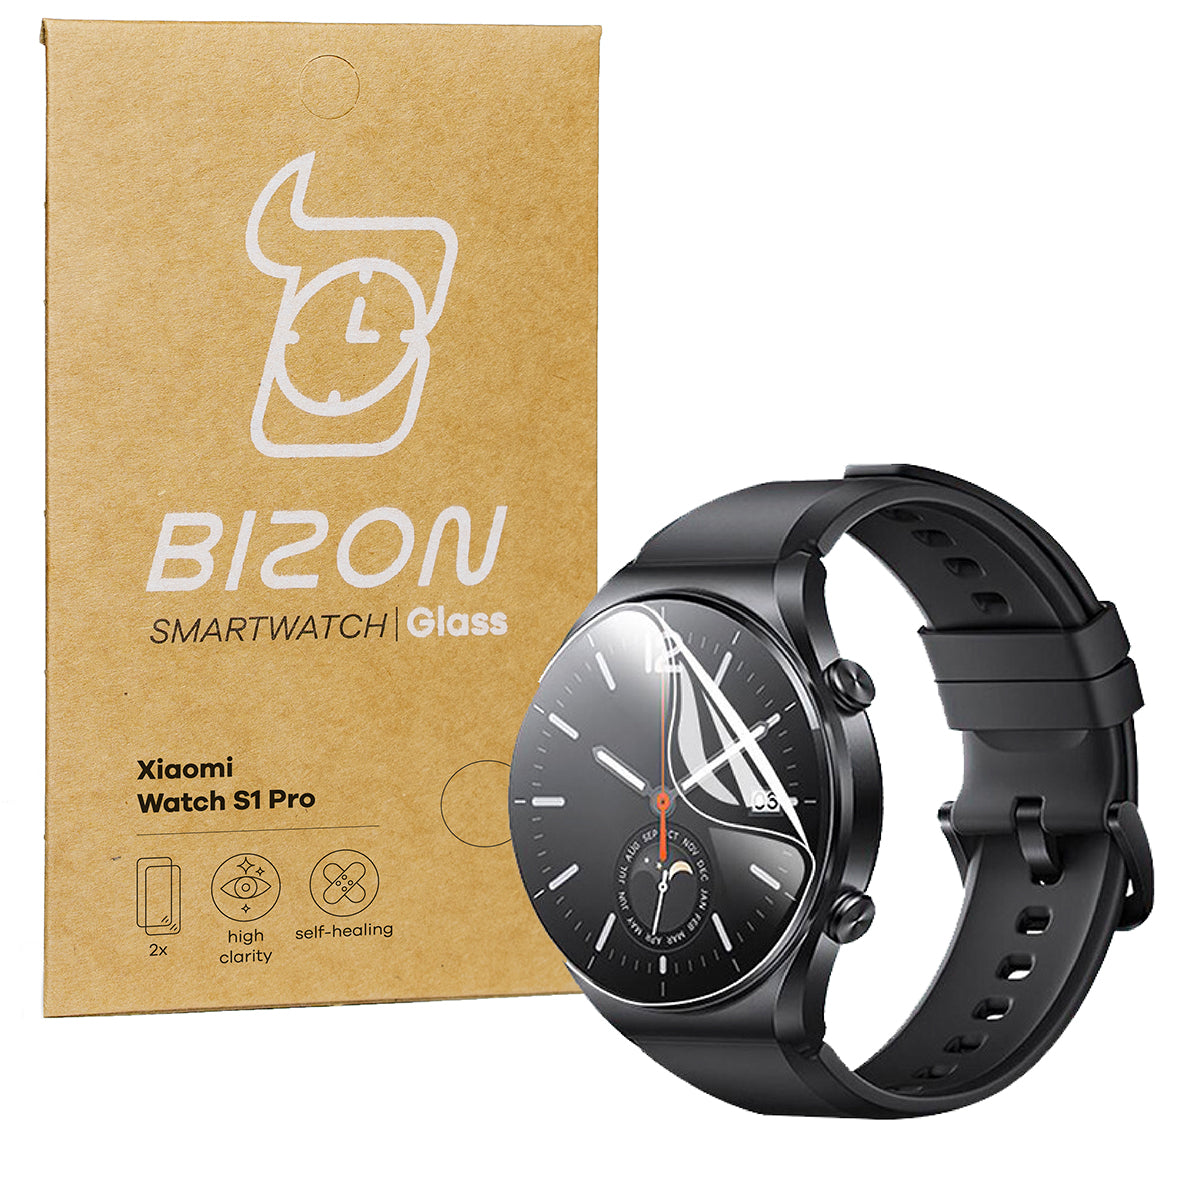 Hydrogel Folie für den Bildschirm Bizon Glass Hydrogel für Xiaomi Watch S1 Pro, 2 Stück